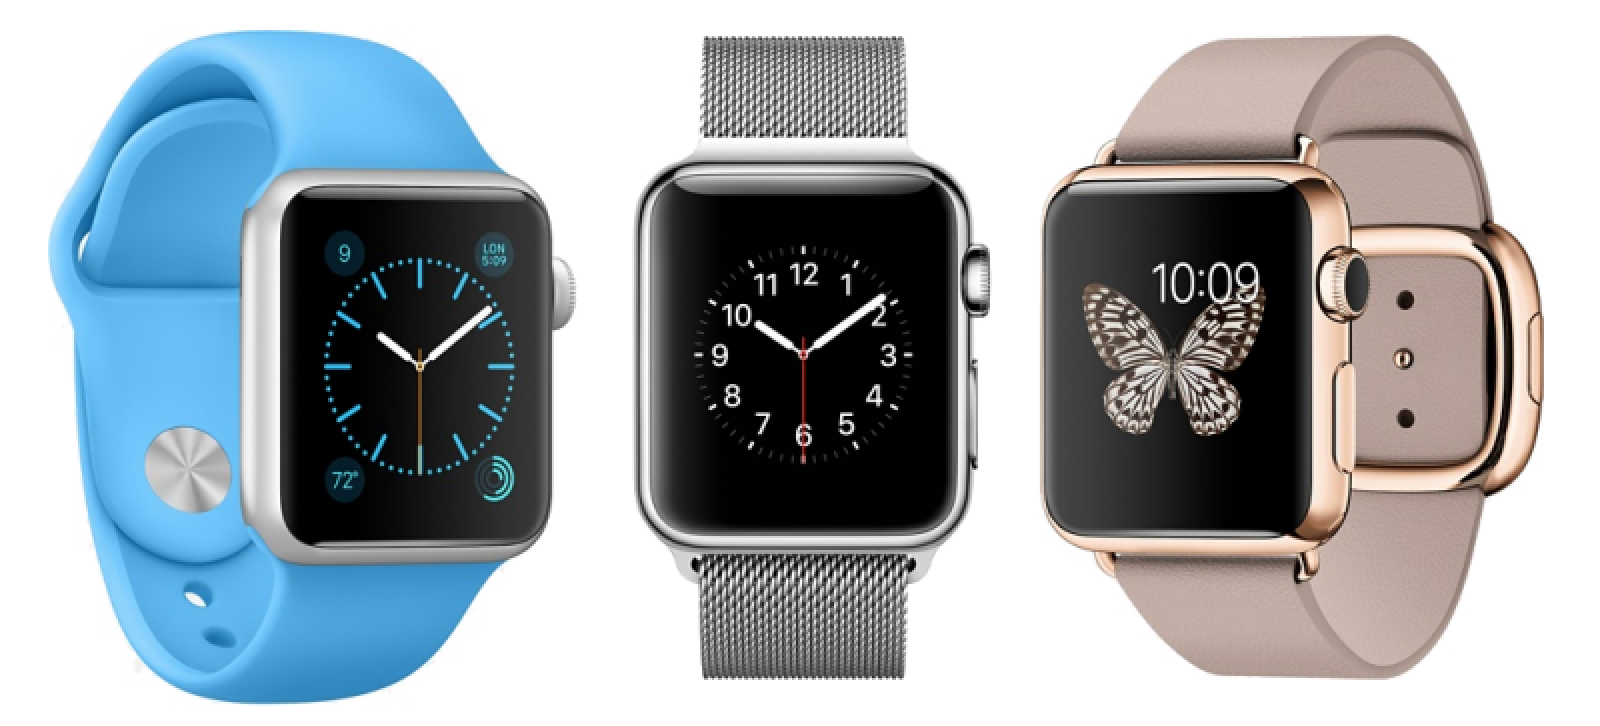 Firma priniesla do sveta inteligentných hodiniek luxus a eleganciu. Apple Watch sú extrémne obľúbené oproti ih konkurencií - svetapple.sk